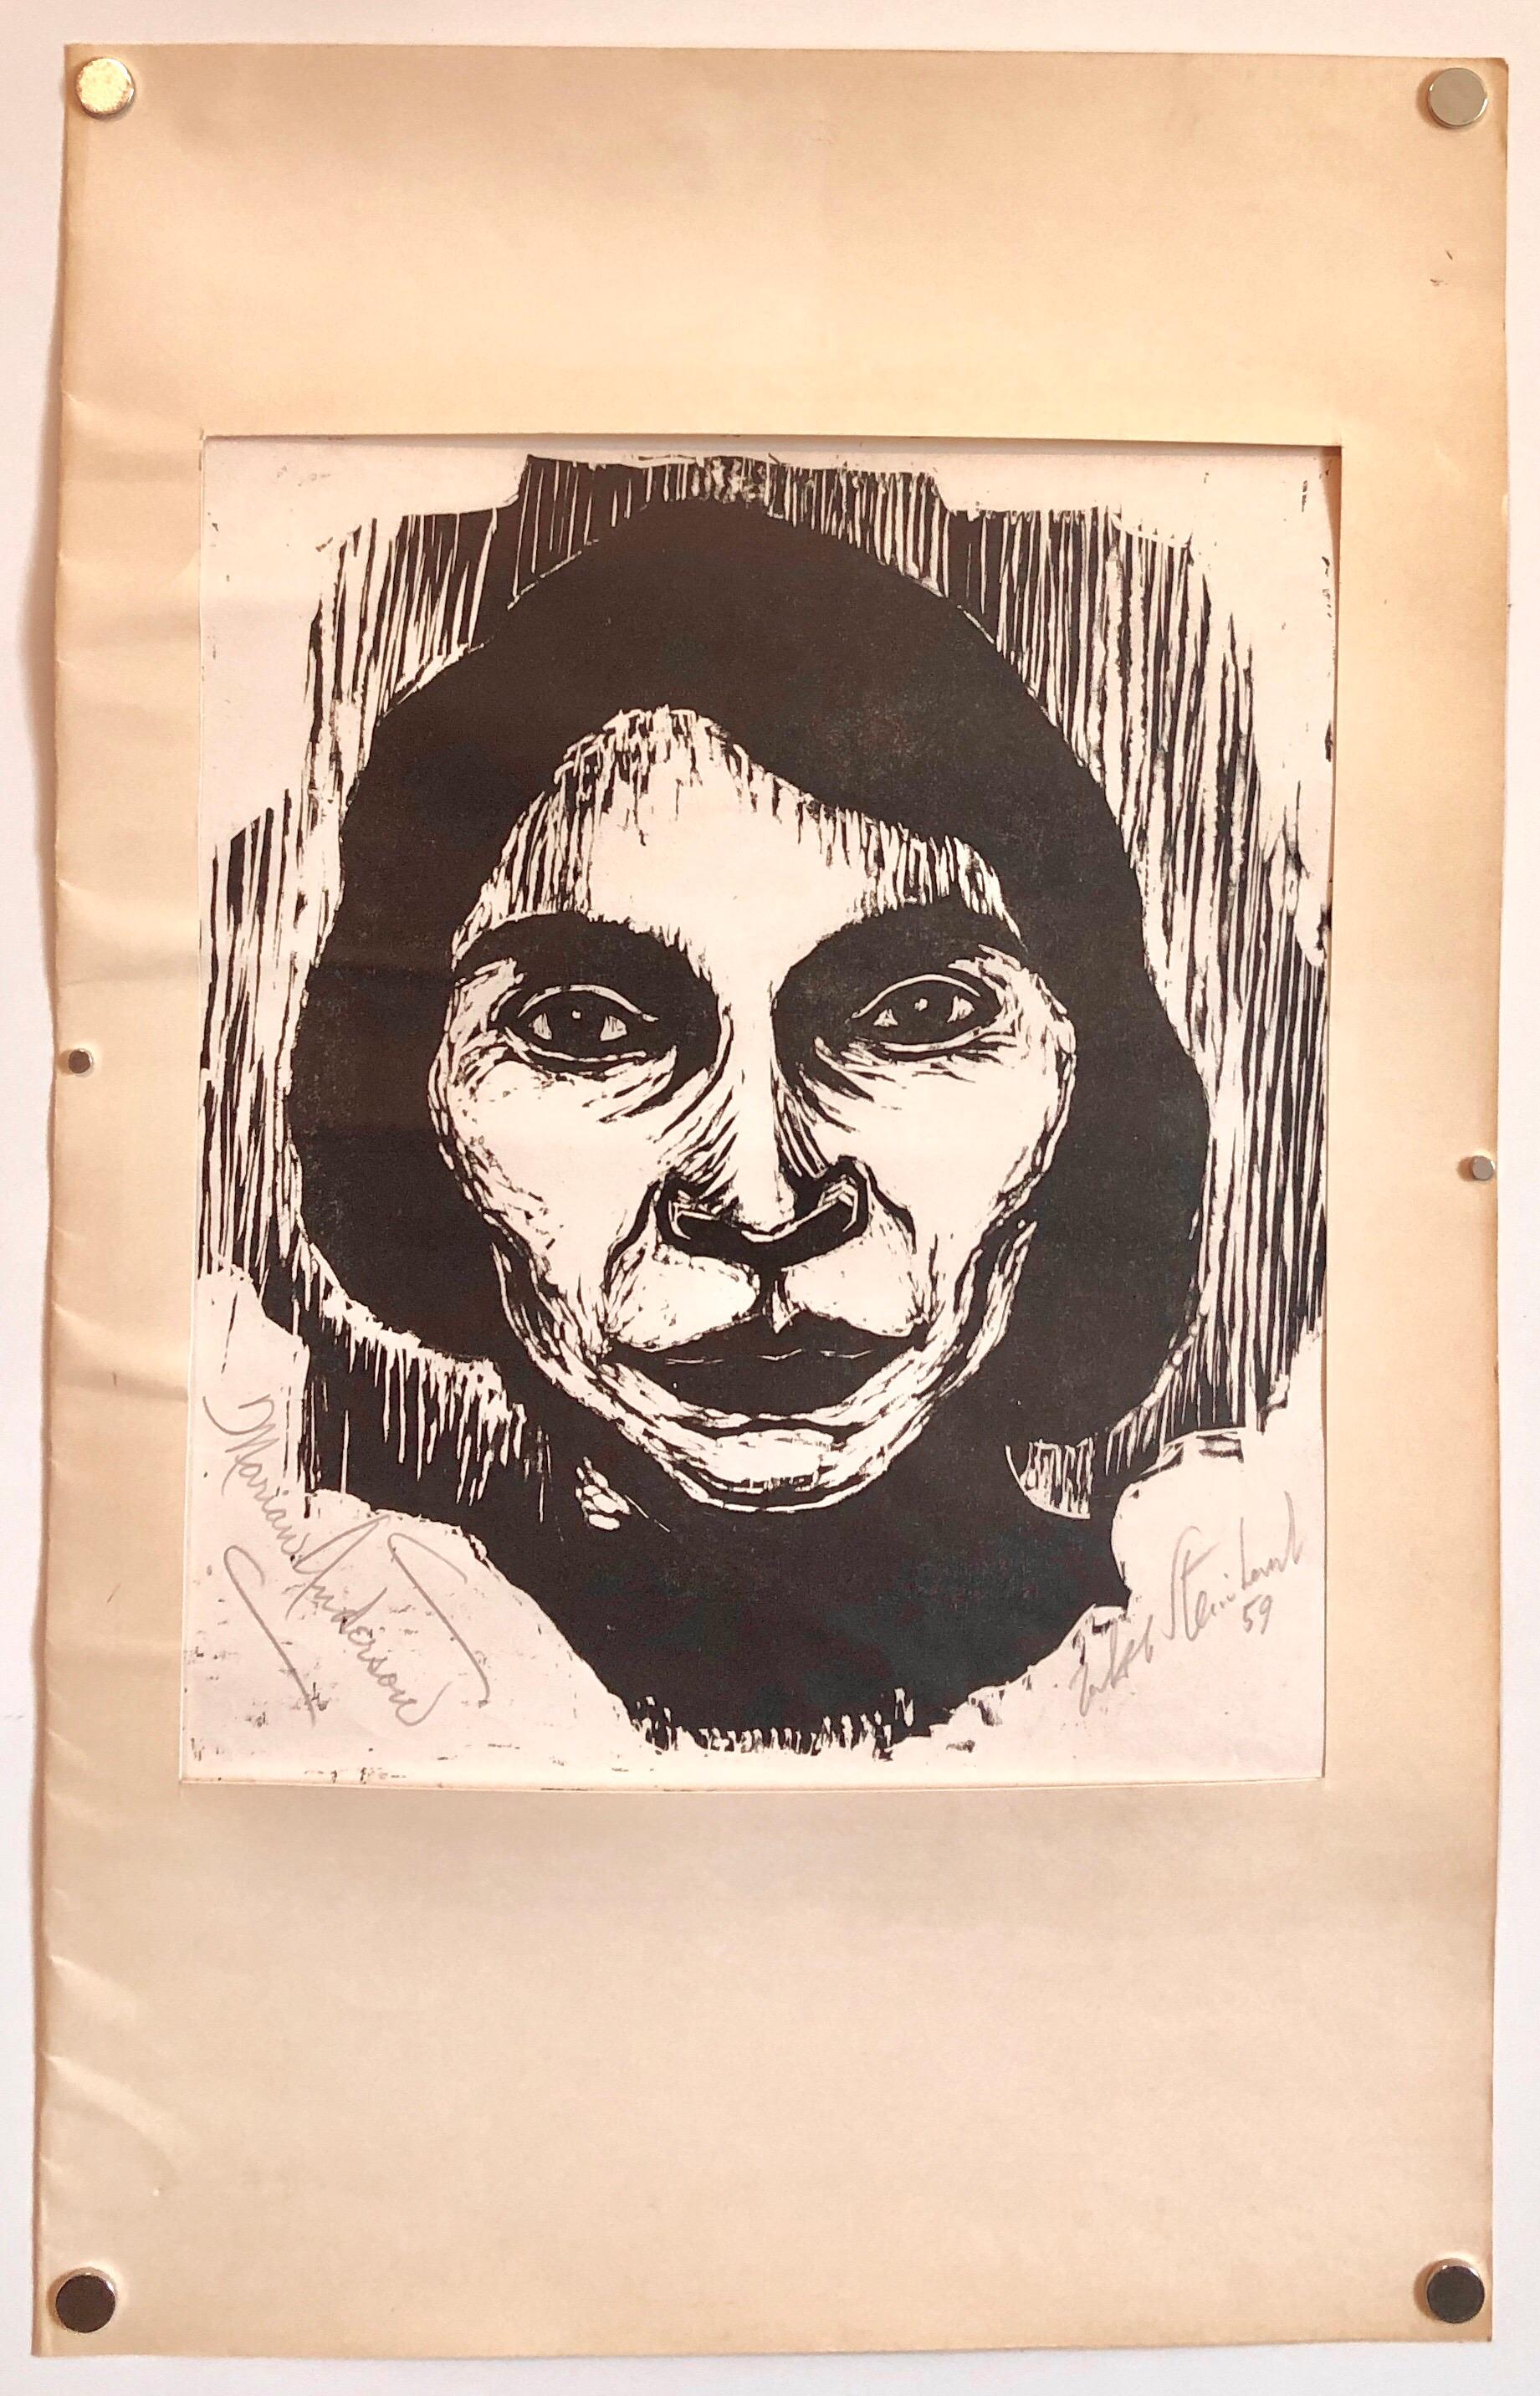 Steinhardt Holzschnitt Marian Anderson Signierte afroamerikanische, israelische Bezalel-Kunst 2